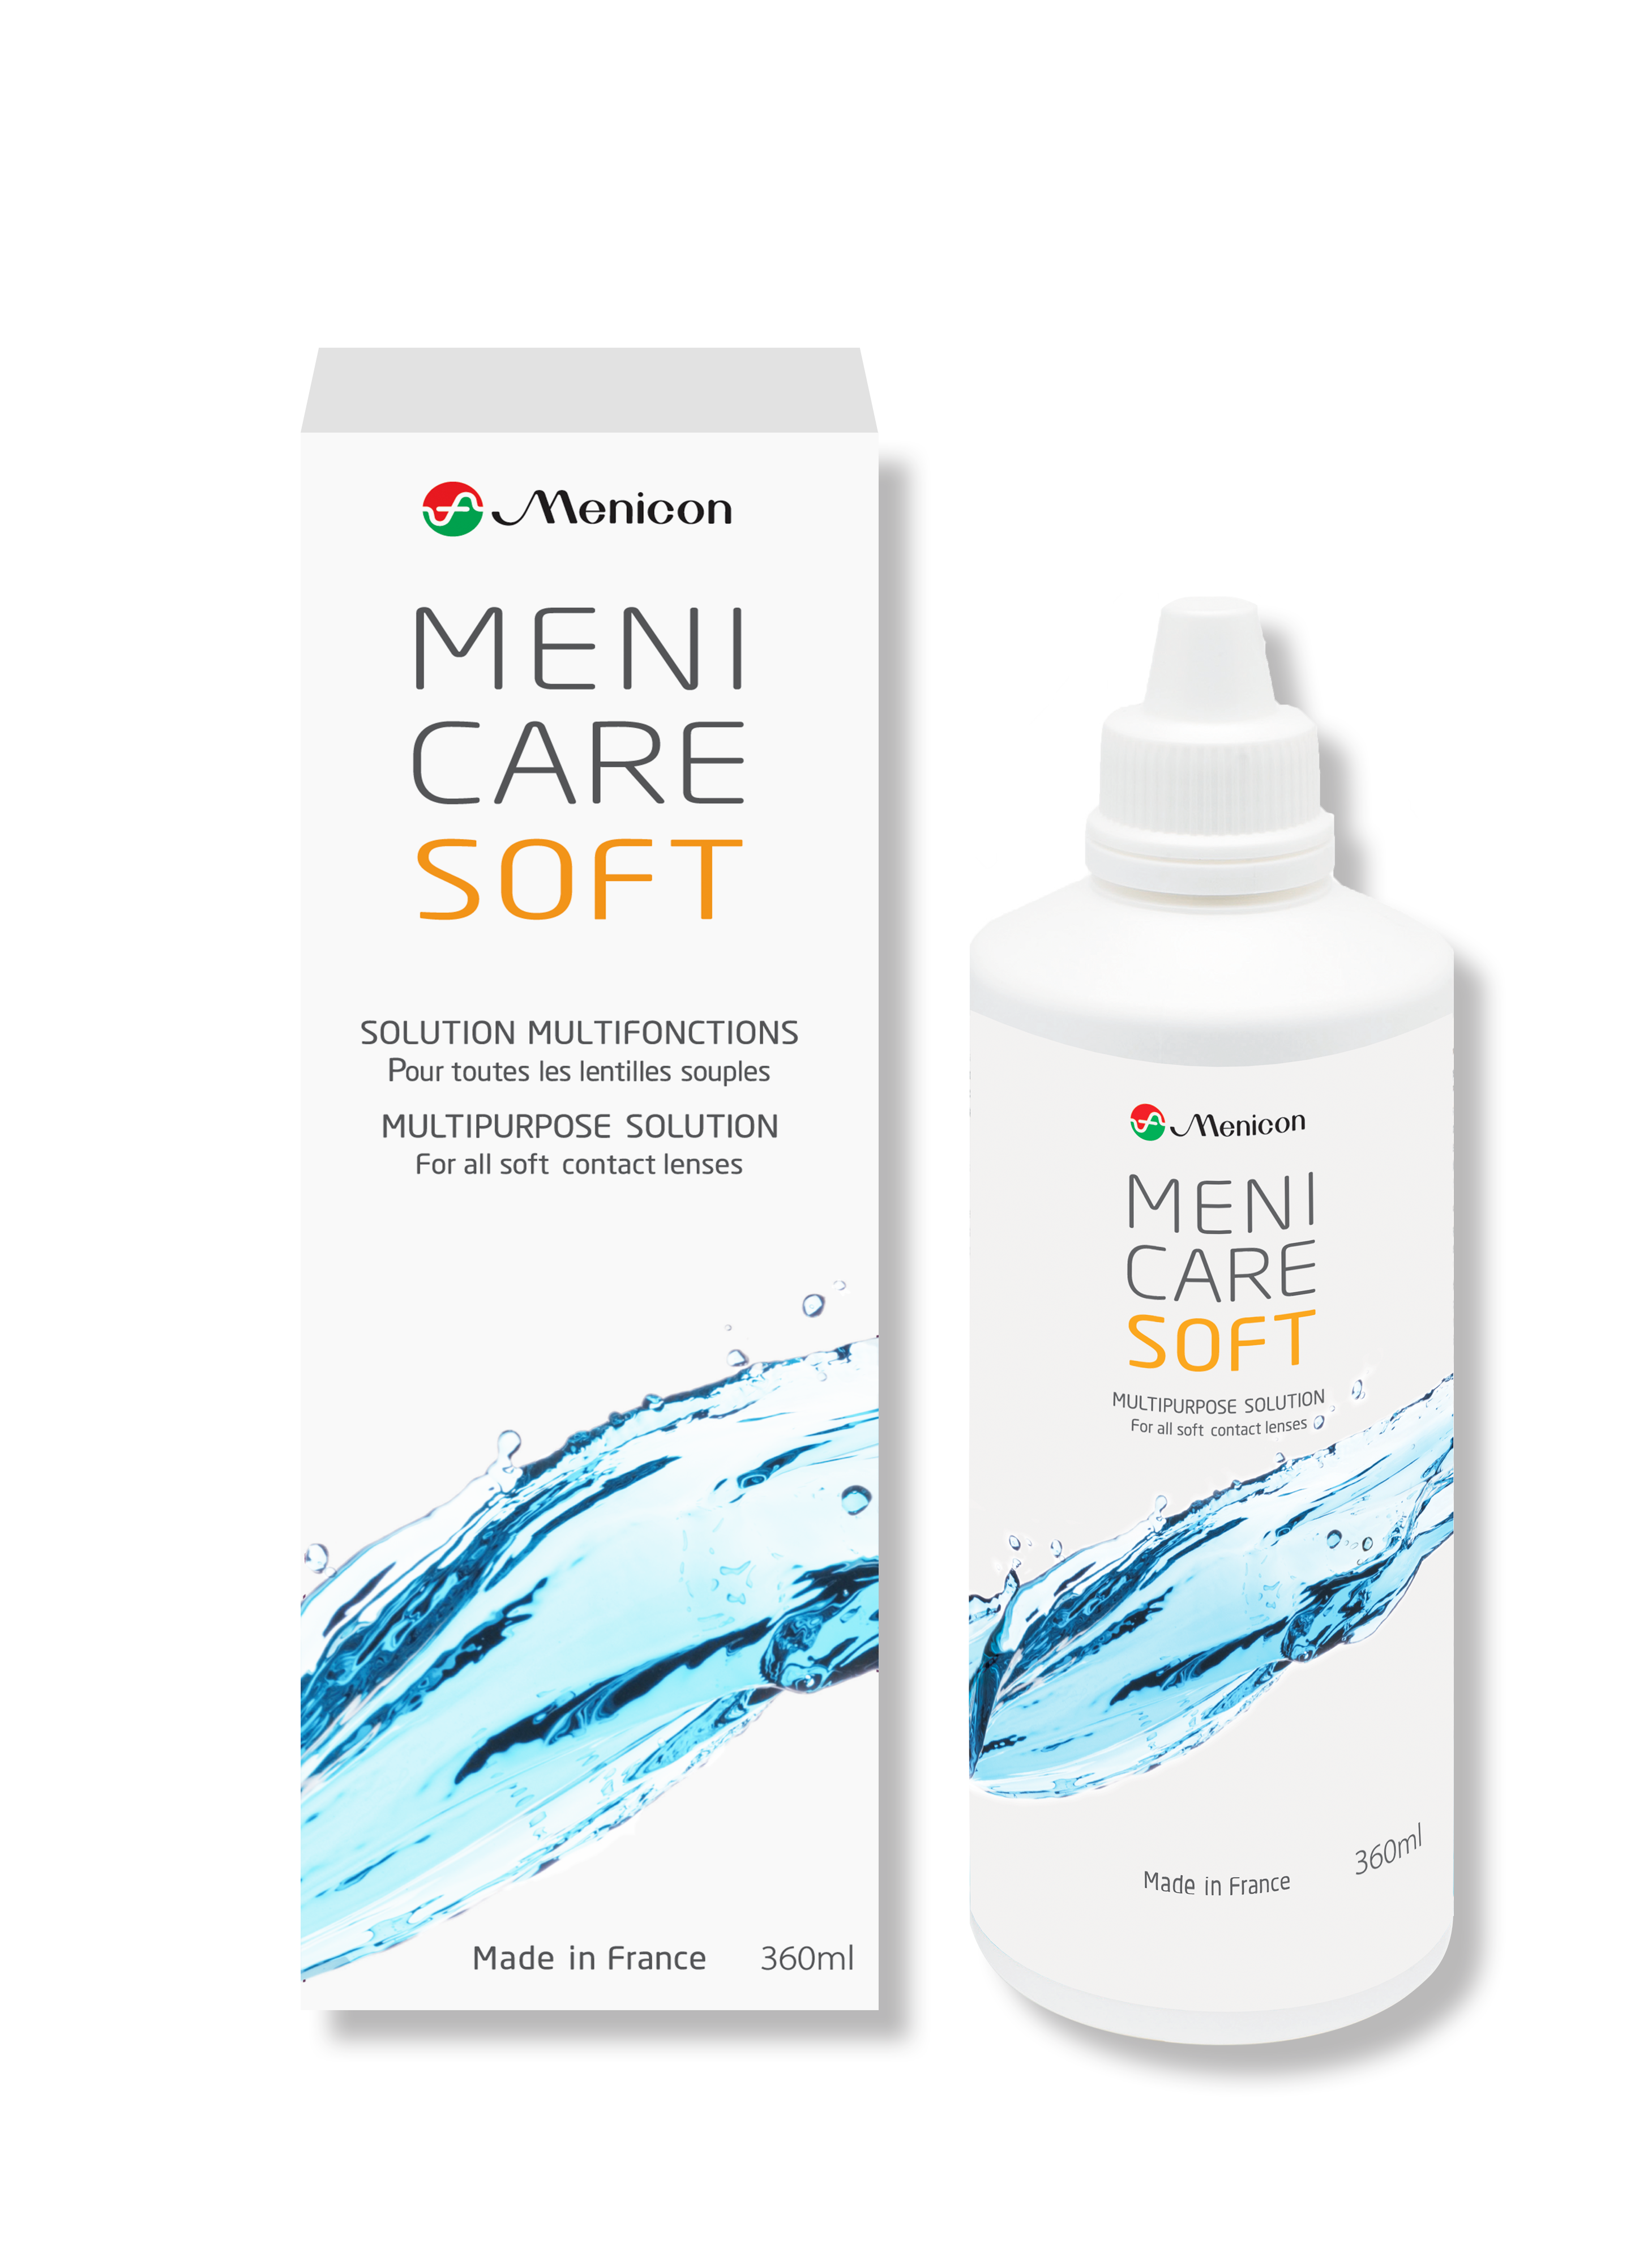 MeniCare Soft 360ml solution lentilles souples Menicon